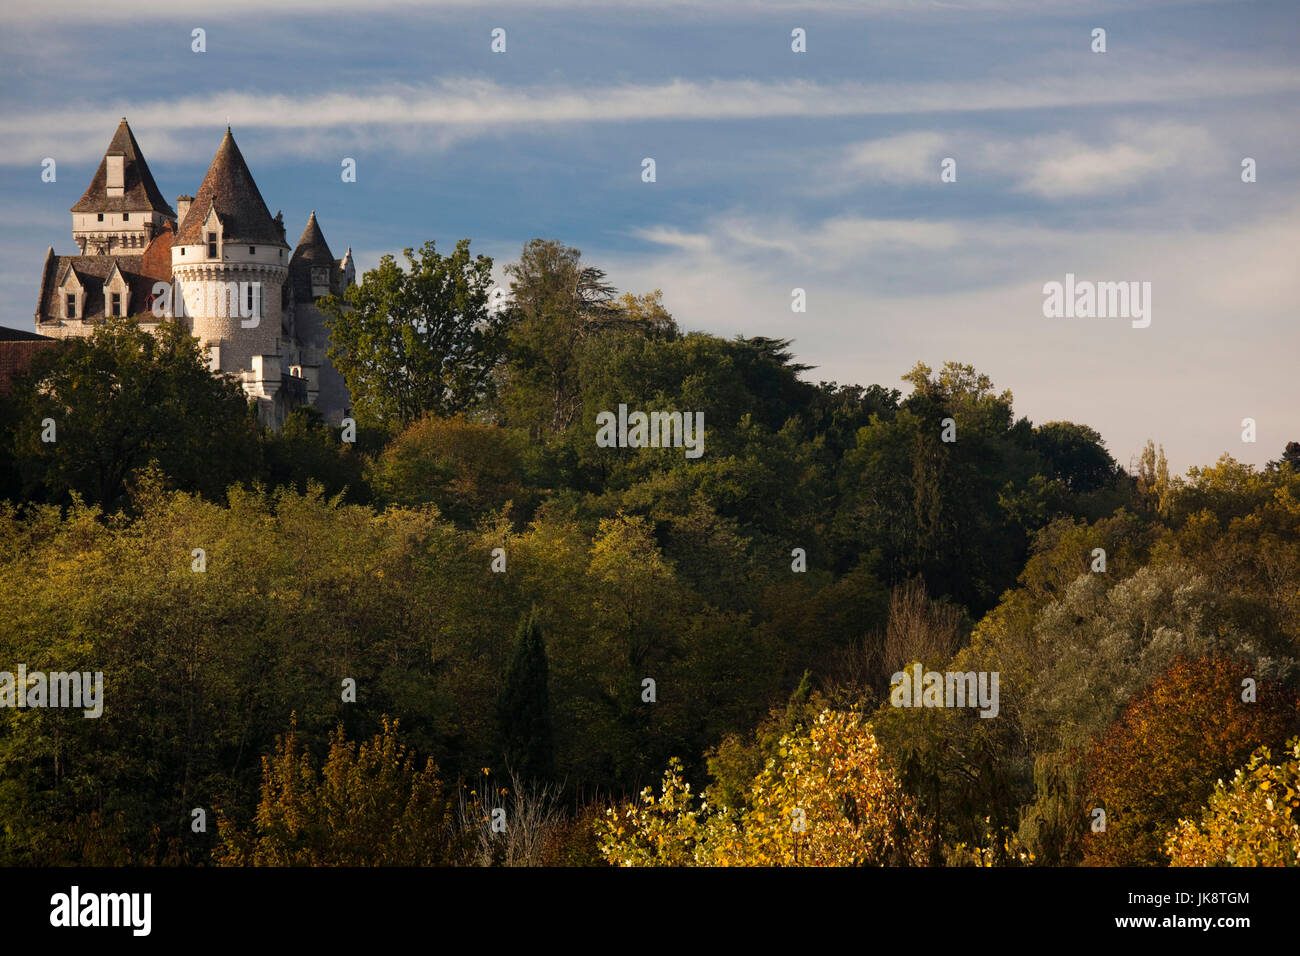 France, Aquitaine Region, Dordogne Department, Castelnaud-la-Chapelle, Chateau des Milandes, former home of dancer Josephine Baker Stock Photo